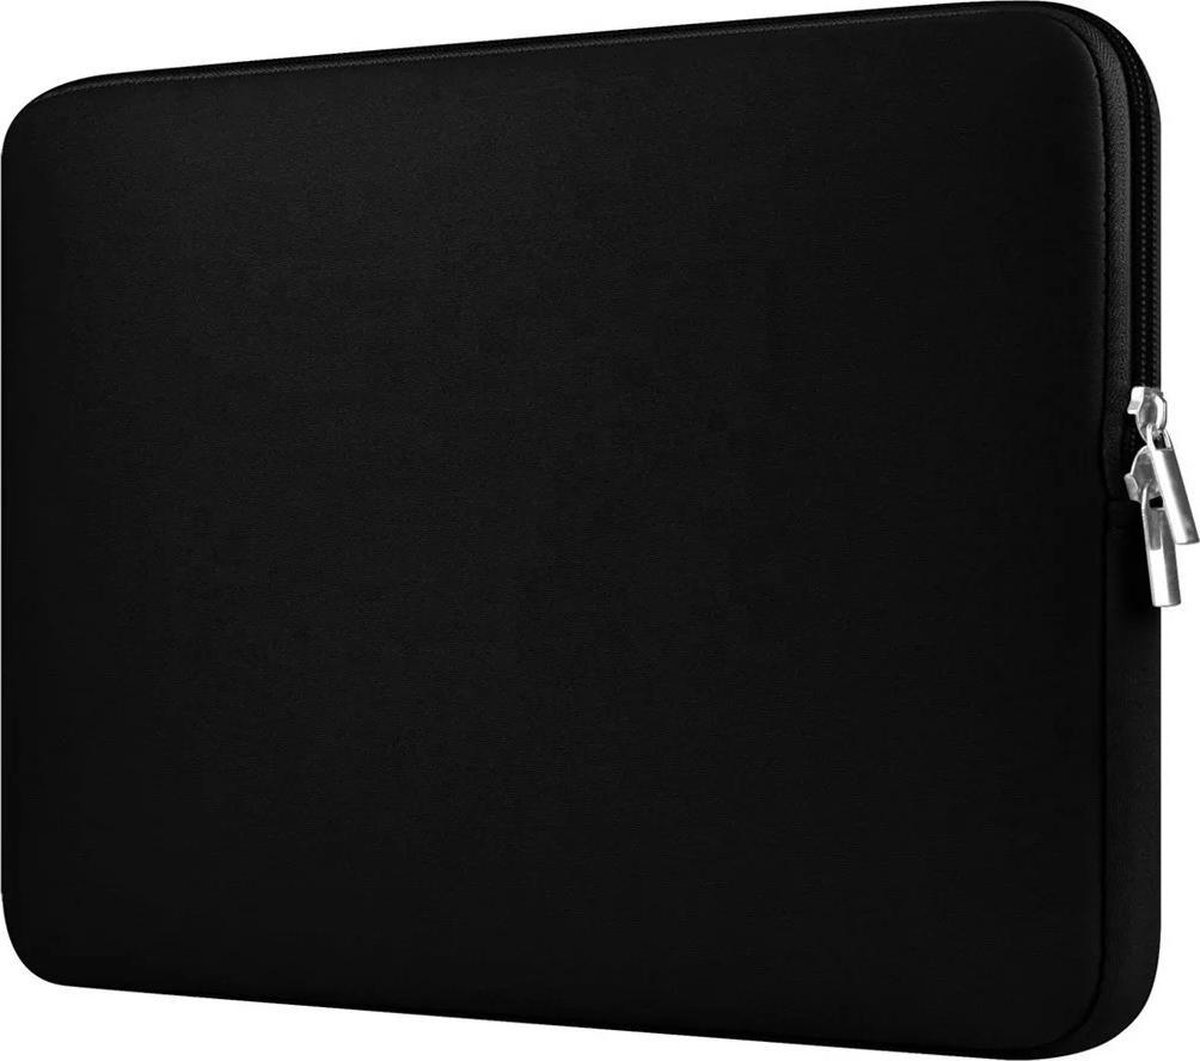 Handige universele laptophoes – case – sleeve – 16 inch – zwart kleur - Schokproof